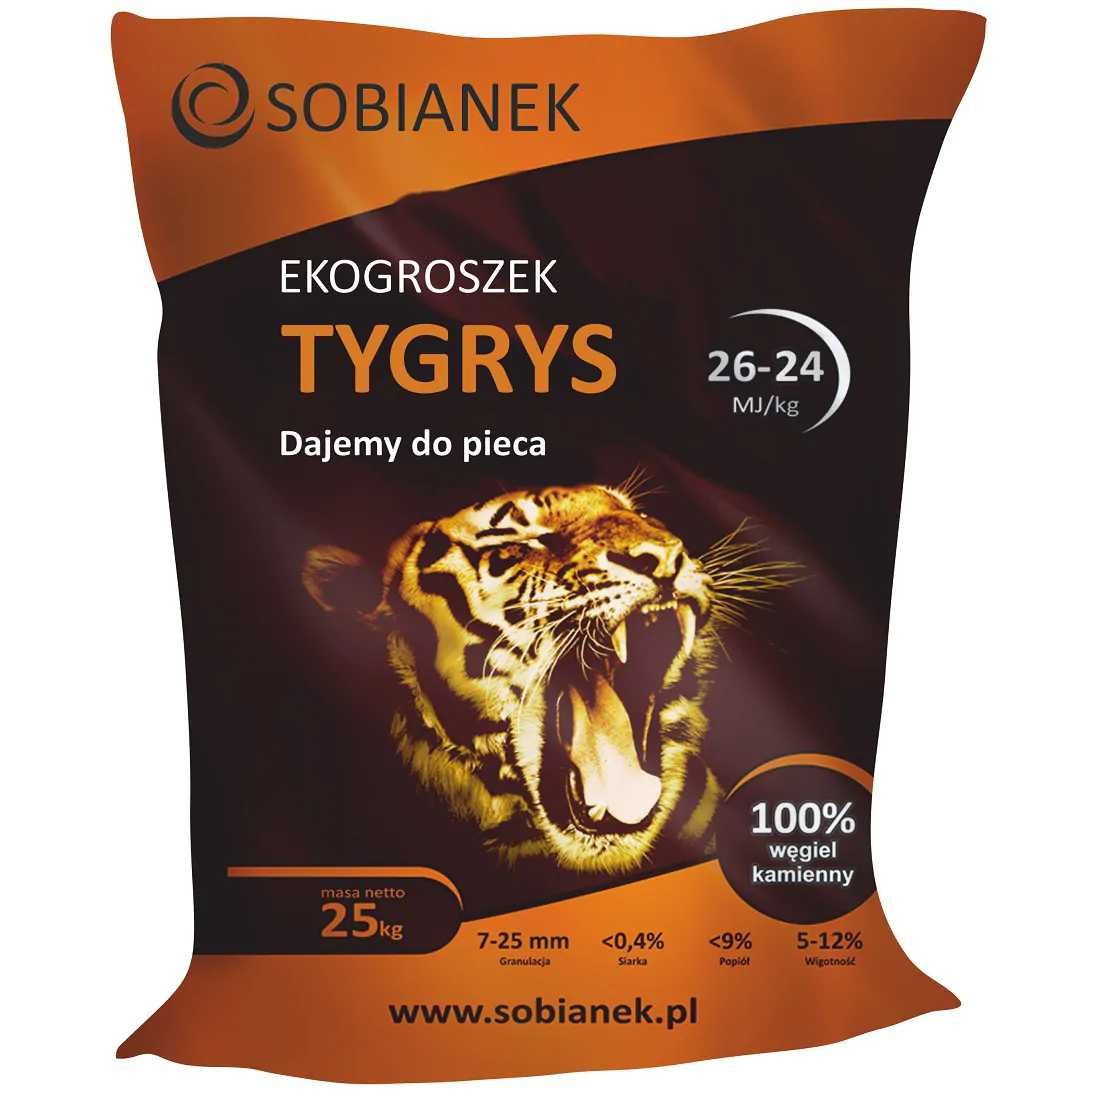 EKO Groszek Plus- Ekogroszek TYGRYS 26-24 MJ/kg 1000 kg TYGRYS